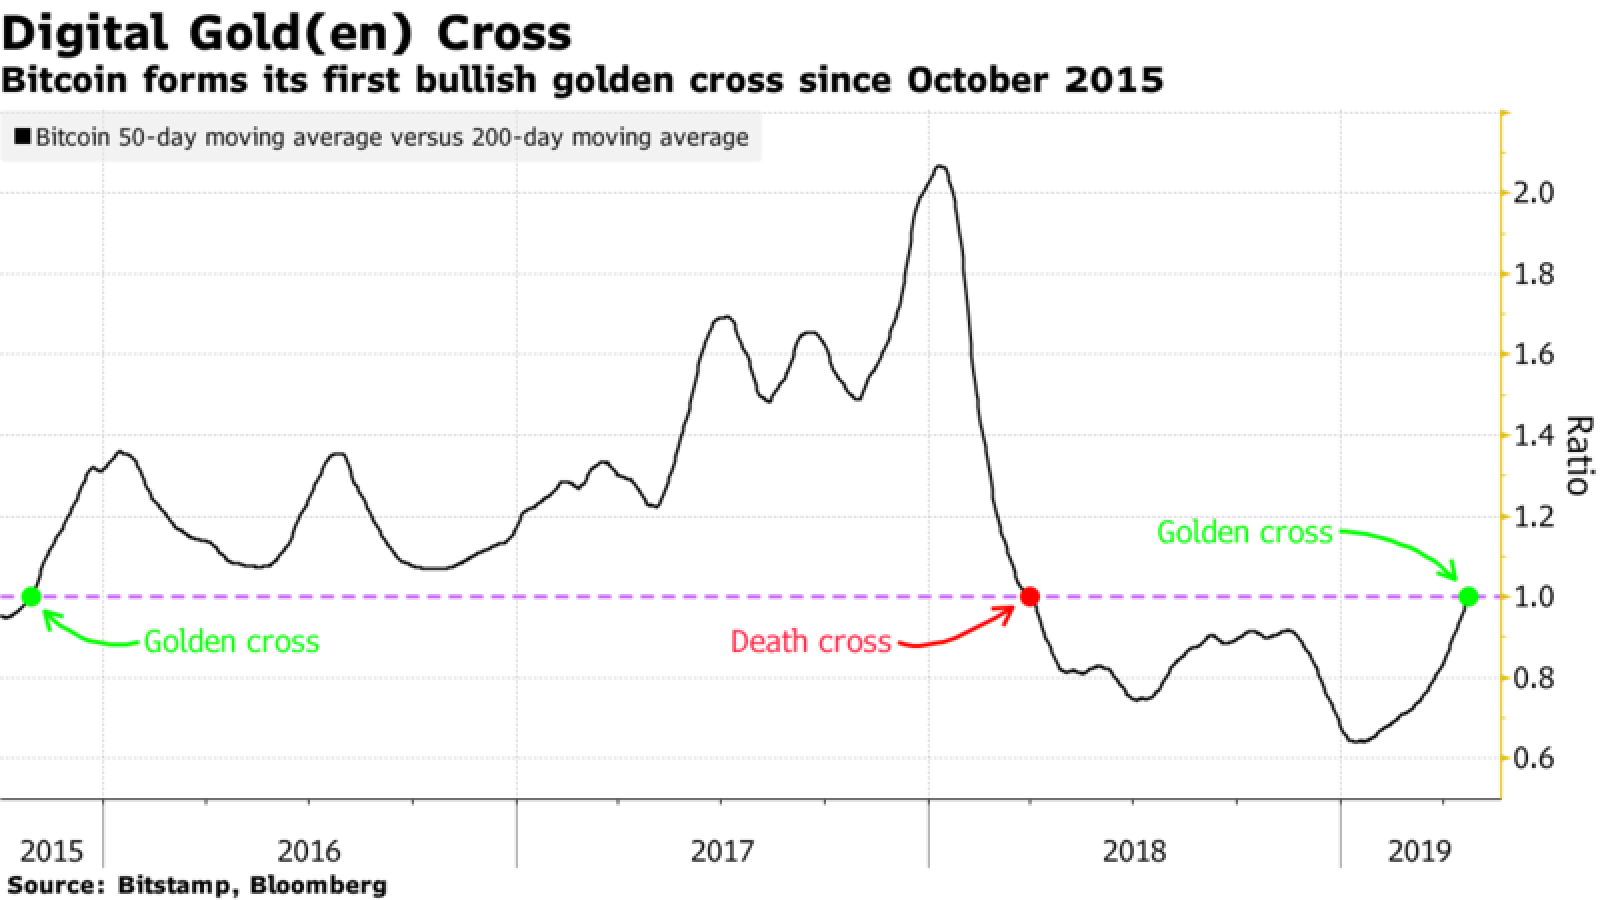 Bitcoin’s golden cross